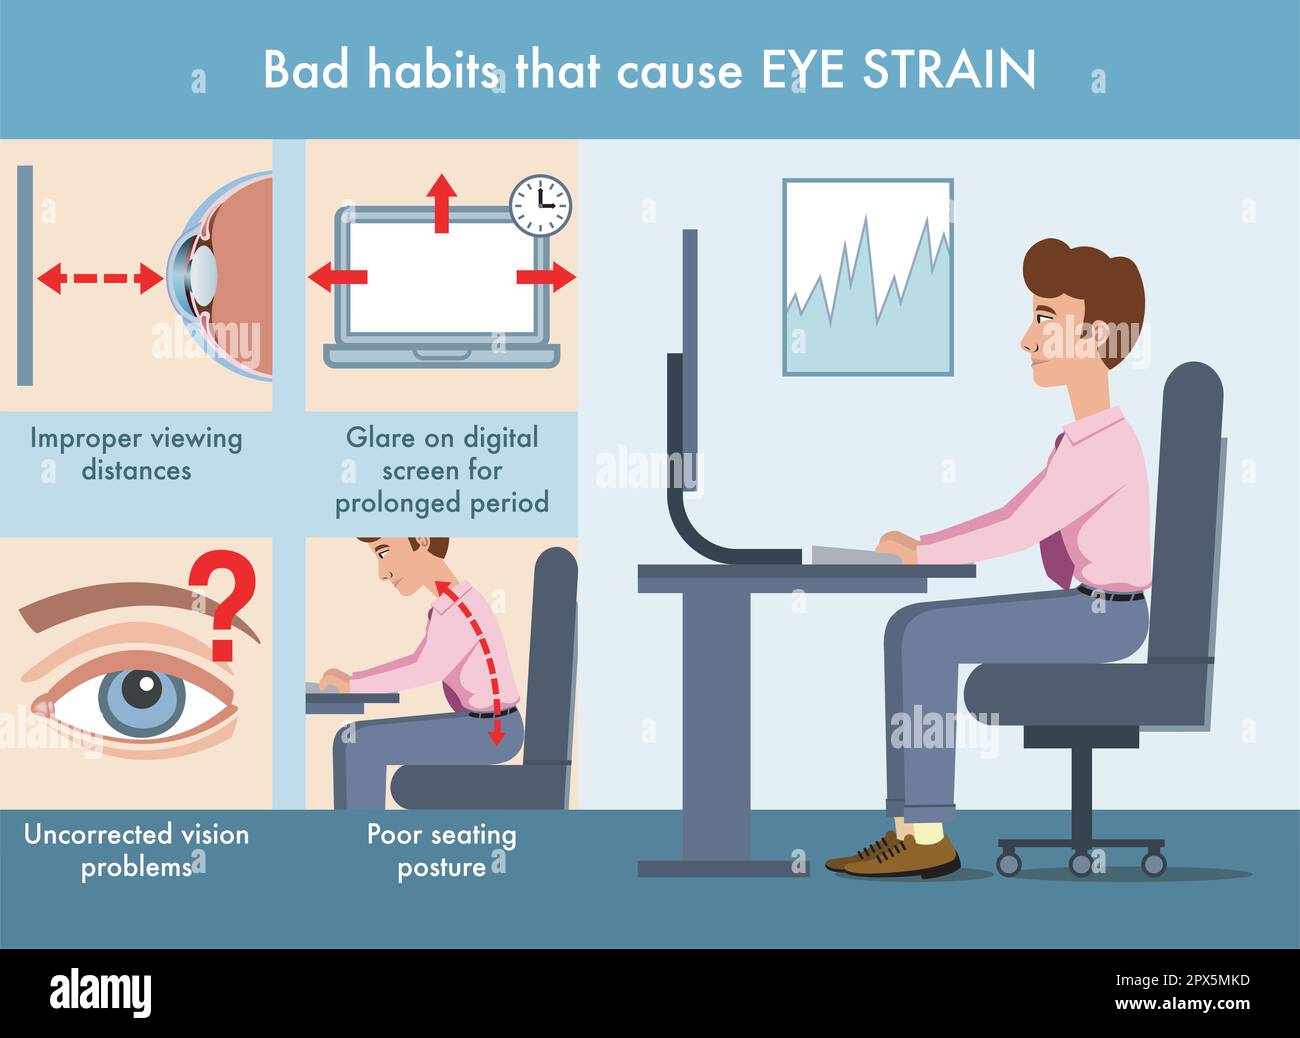 Semplice illustrazione delle cattive abitudini che causano stress agli occhi, con annotazioni. Illustrazione Vettoriale